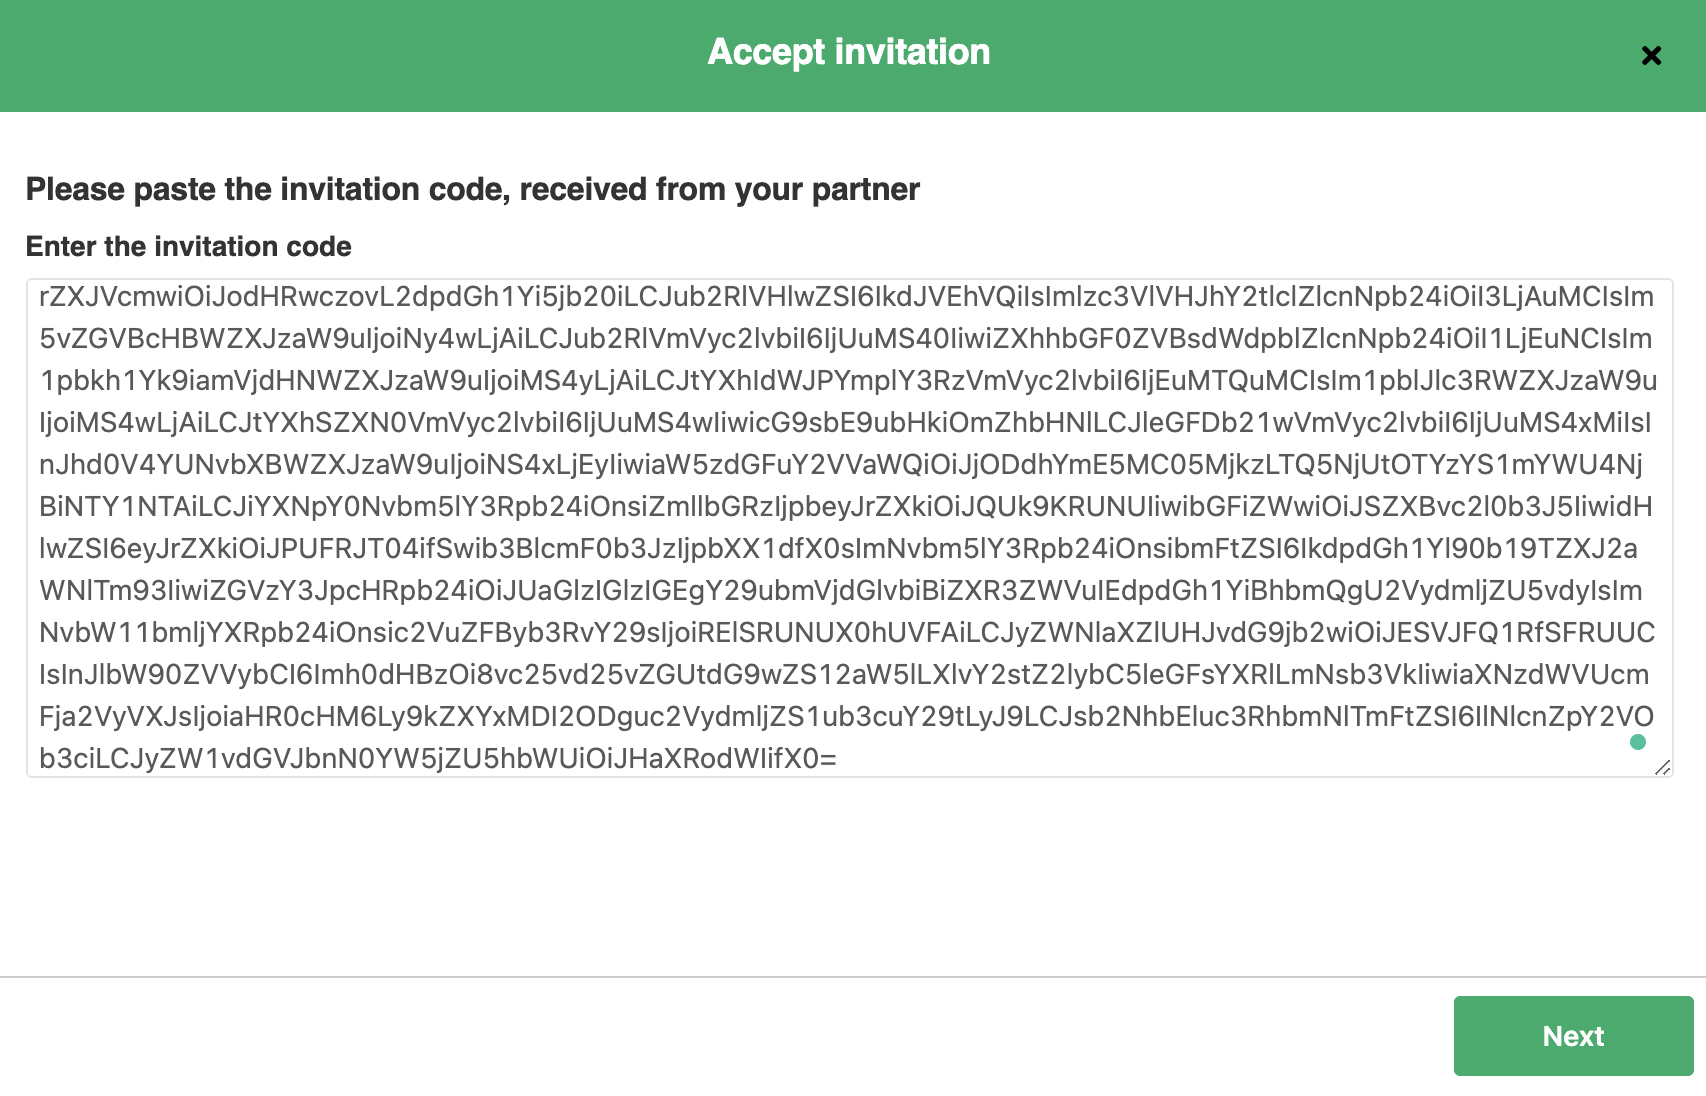 Paste the invitation code in ServiceNow